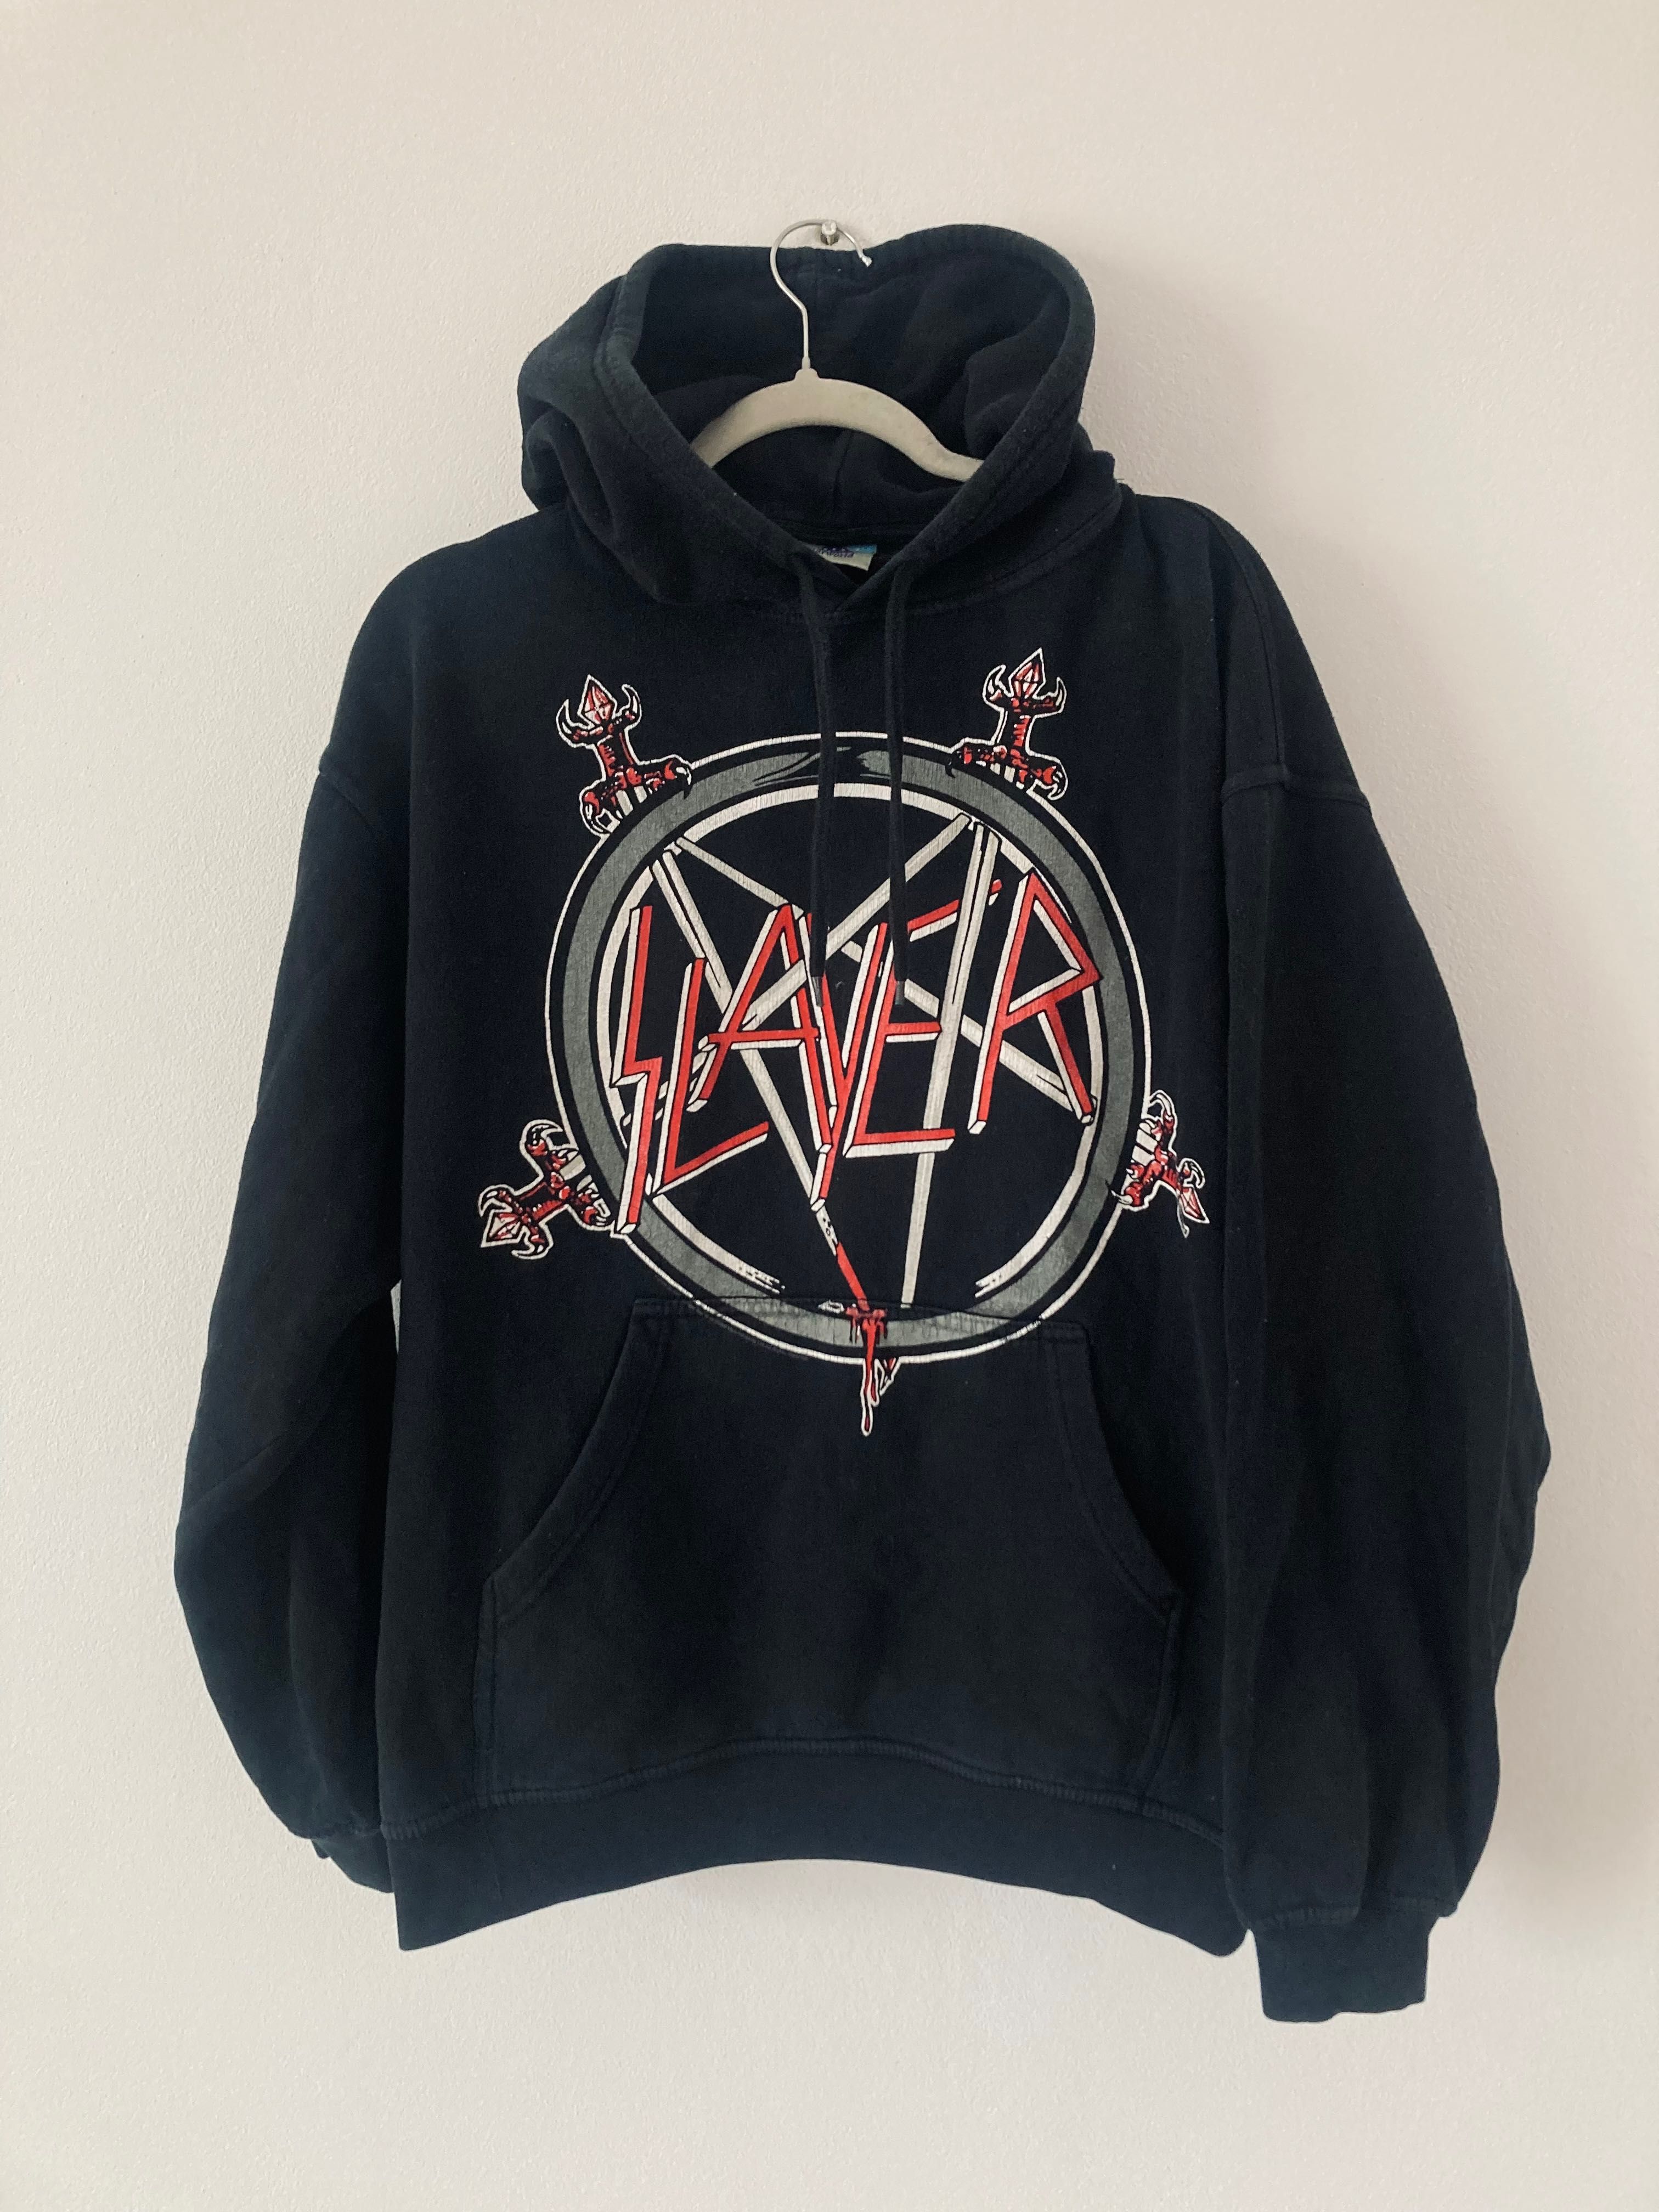 Slayer vintage merch hoodie